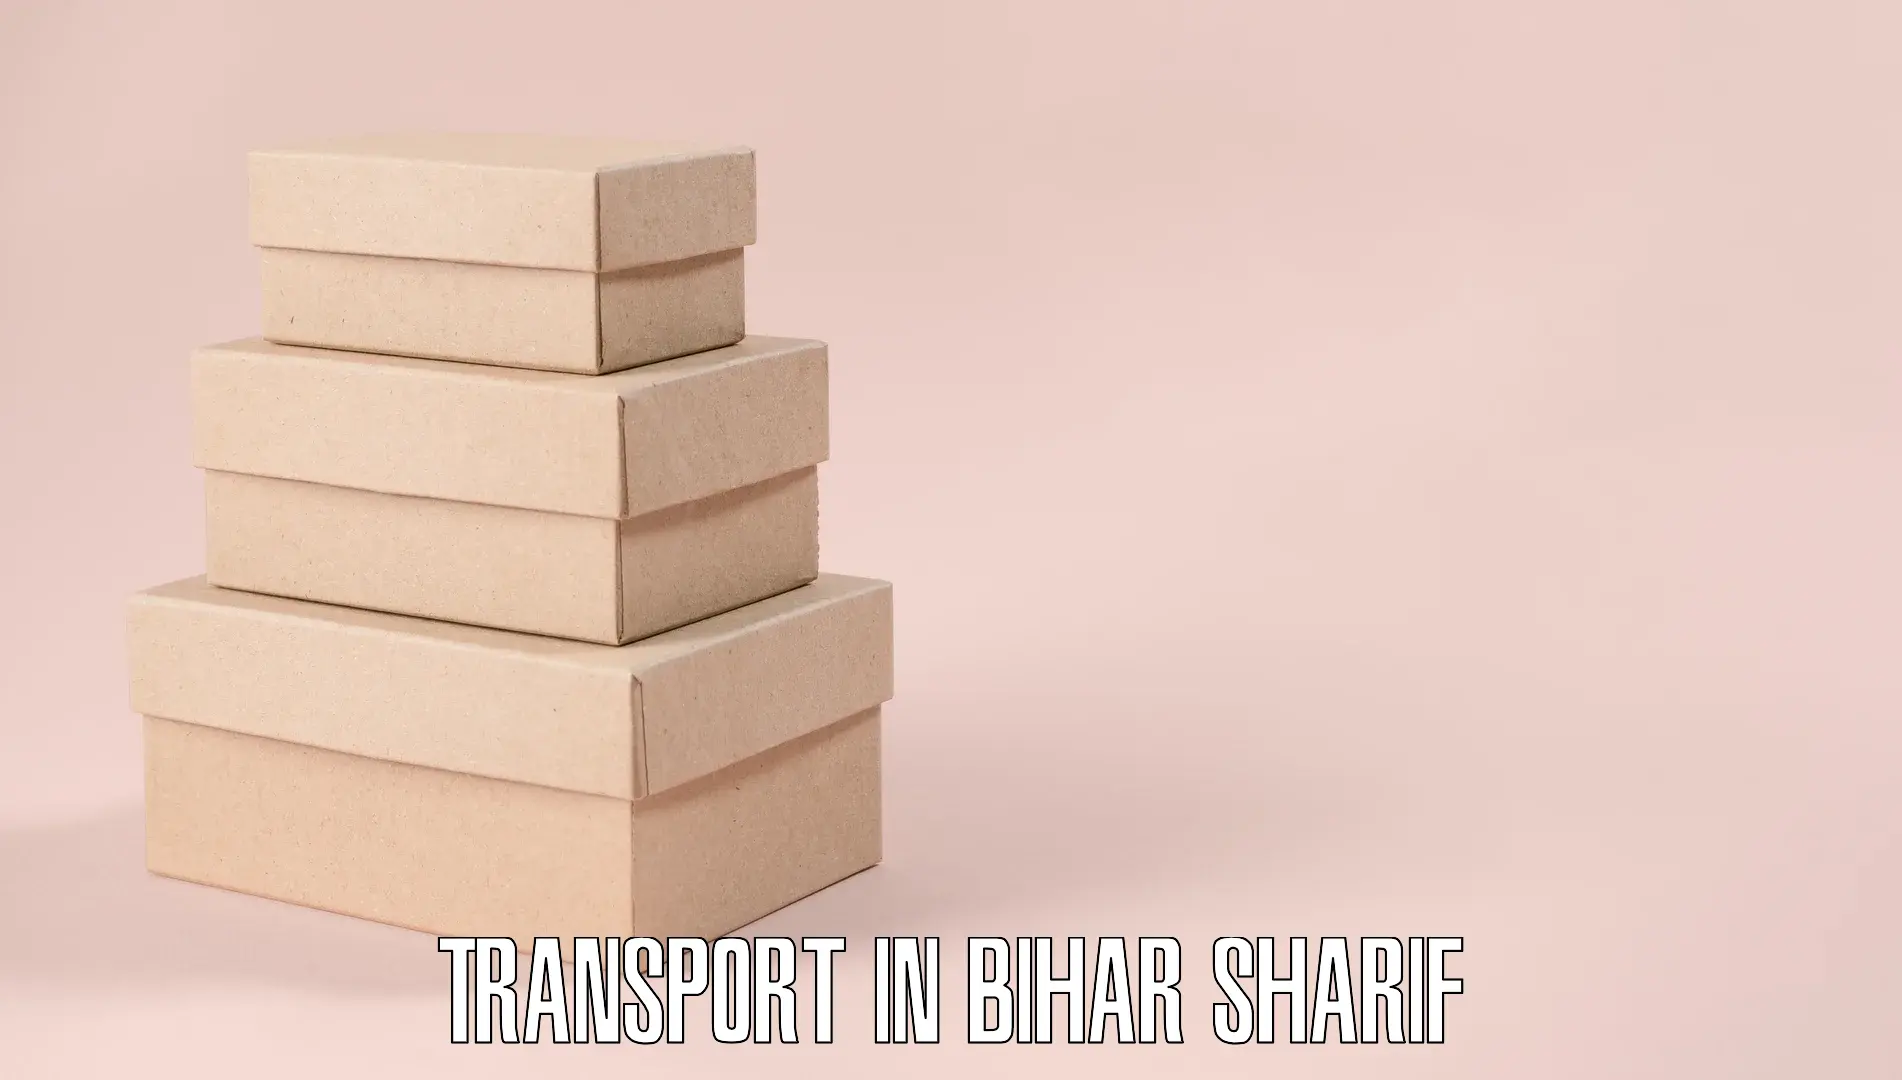 Shipping services in Bihar Sharif